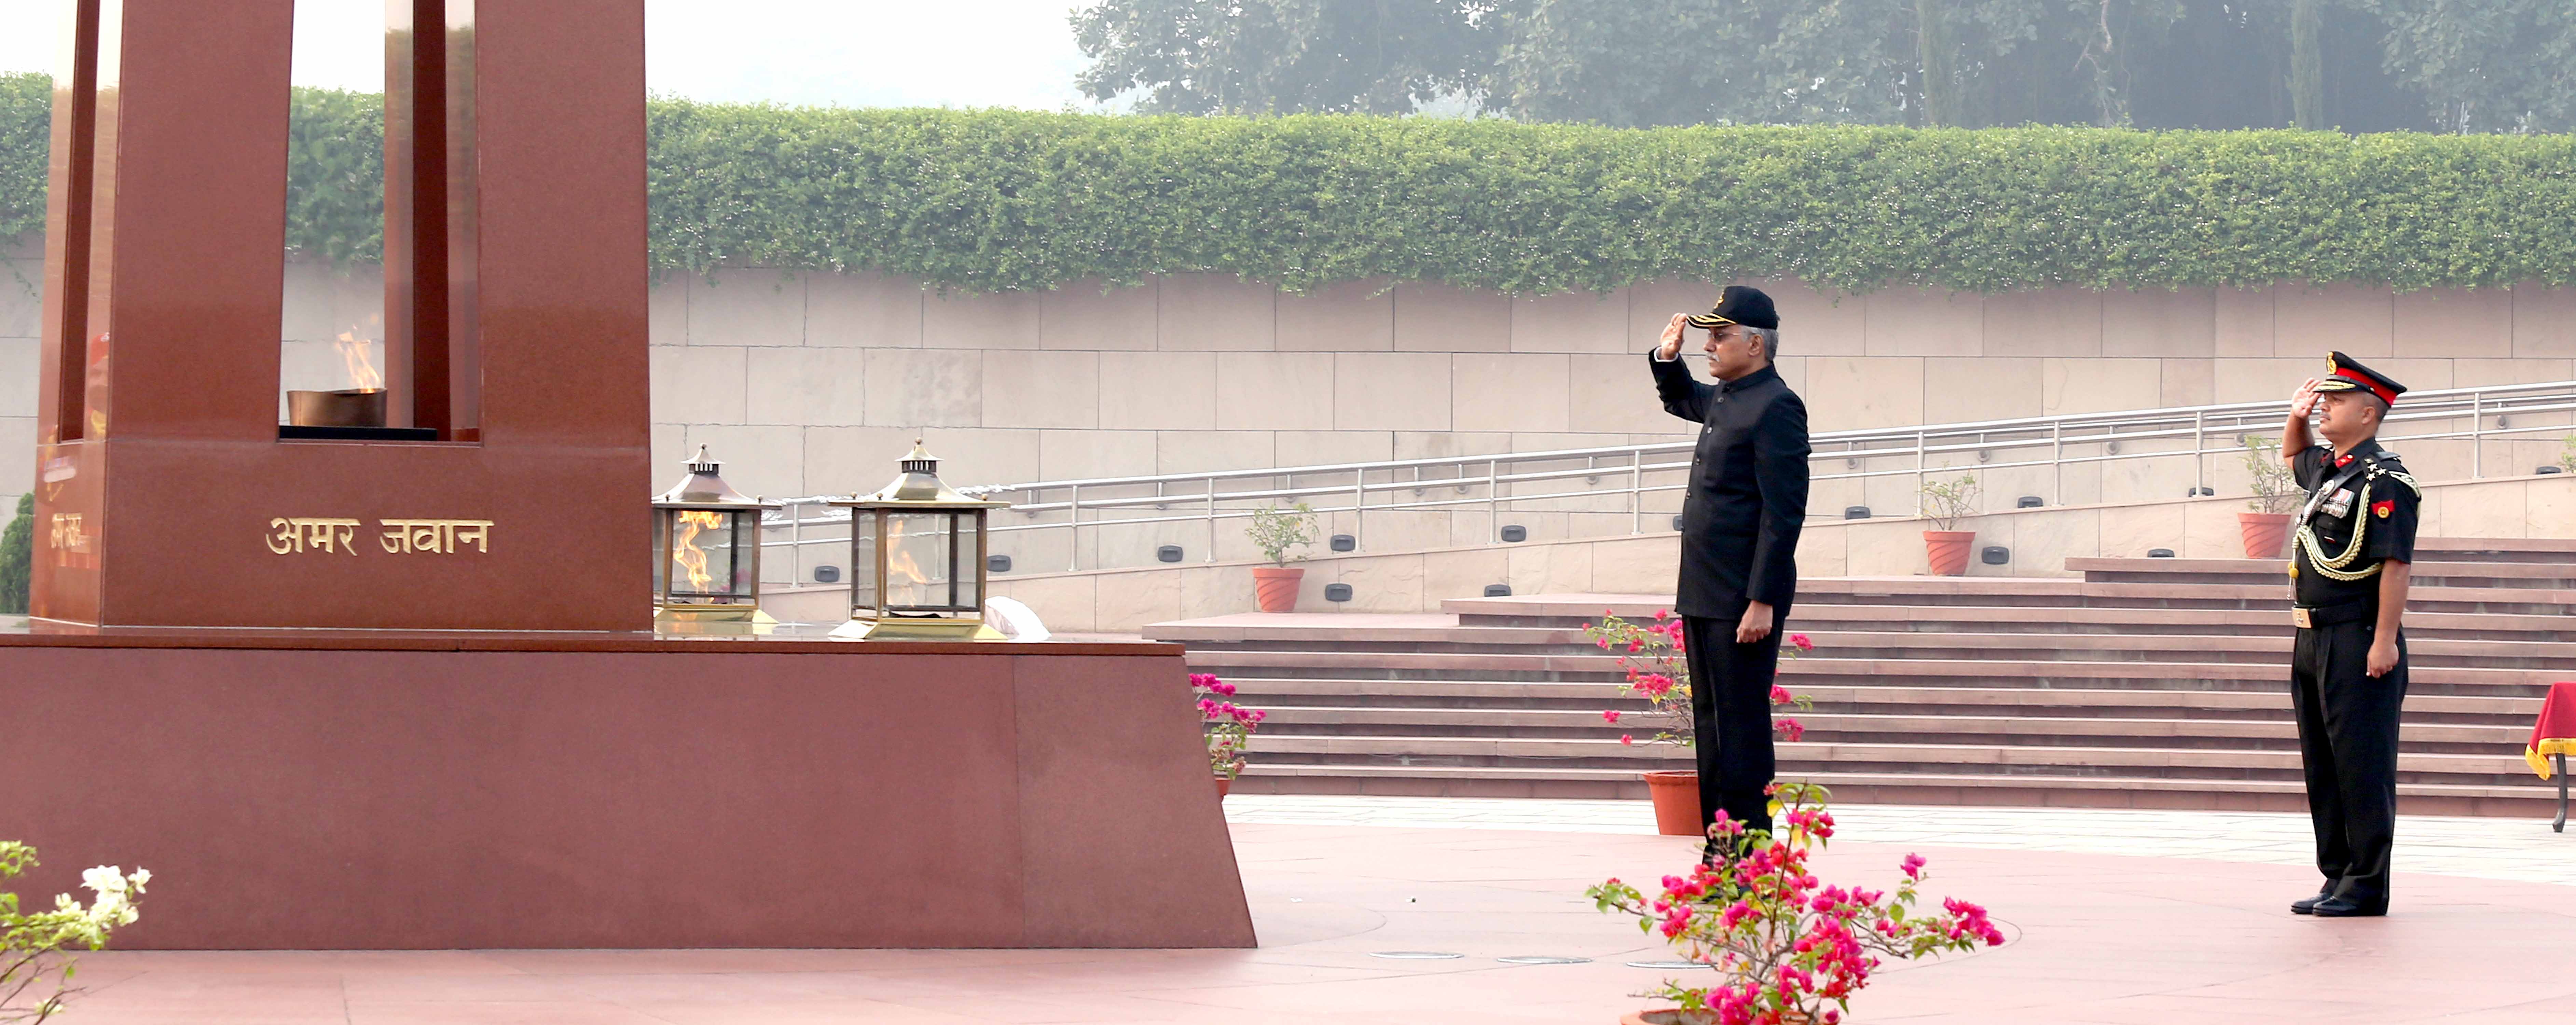 श्री गिरिधर अरमने 01 नवंबर 2022 को रक्षा सचिव का पद संभालने से पहले नई दिल्ली में राष्ट्रीय समर स्मारक पर वीरगति को प्राप्त सैनिकों को श्रद्धांजलि अर्पित करते हुए।